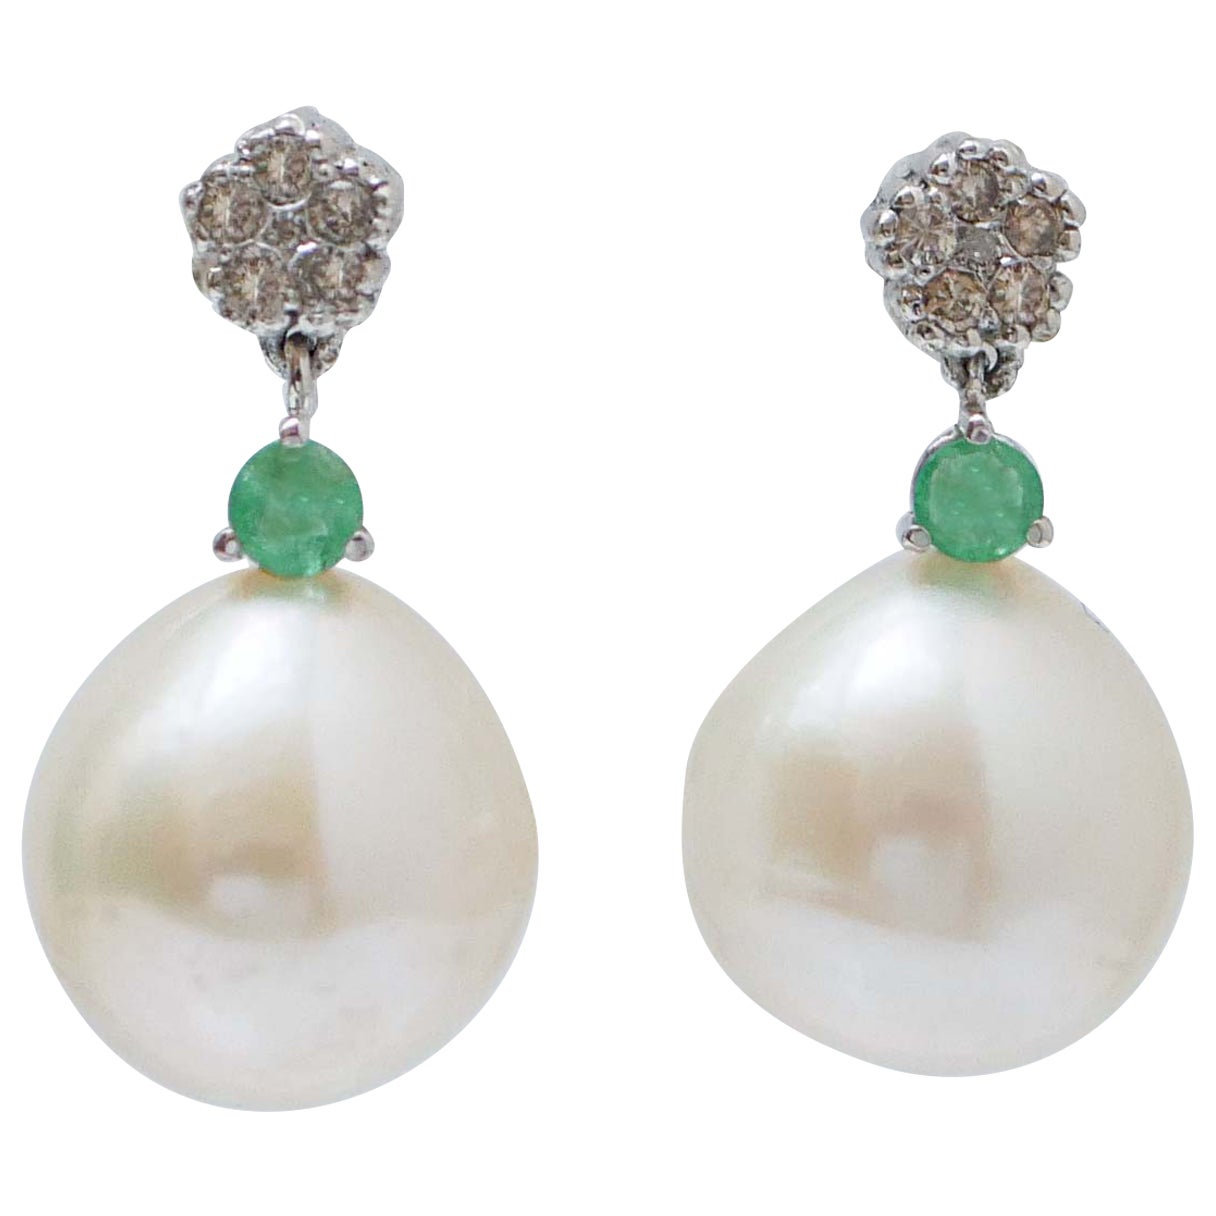 Boucles d'oreilles en or blanc 14 carats, perles blanches, émeraudes et diamants.